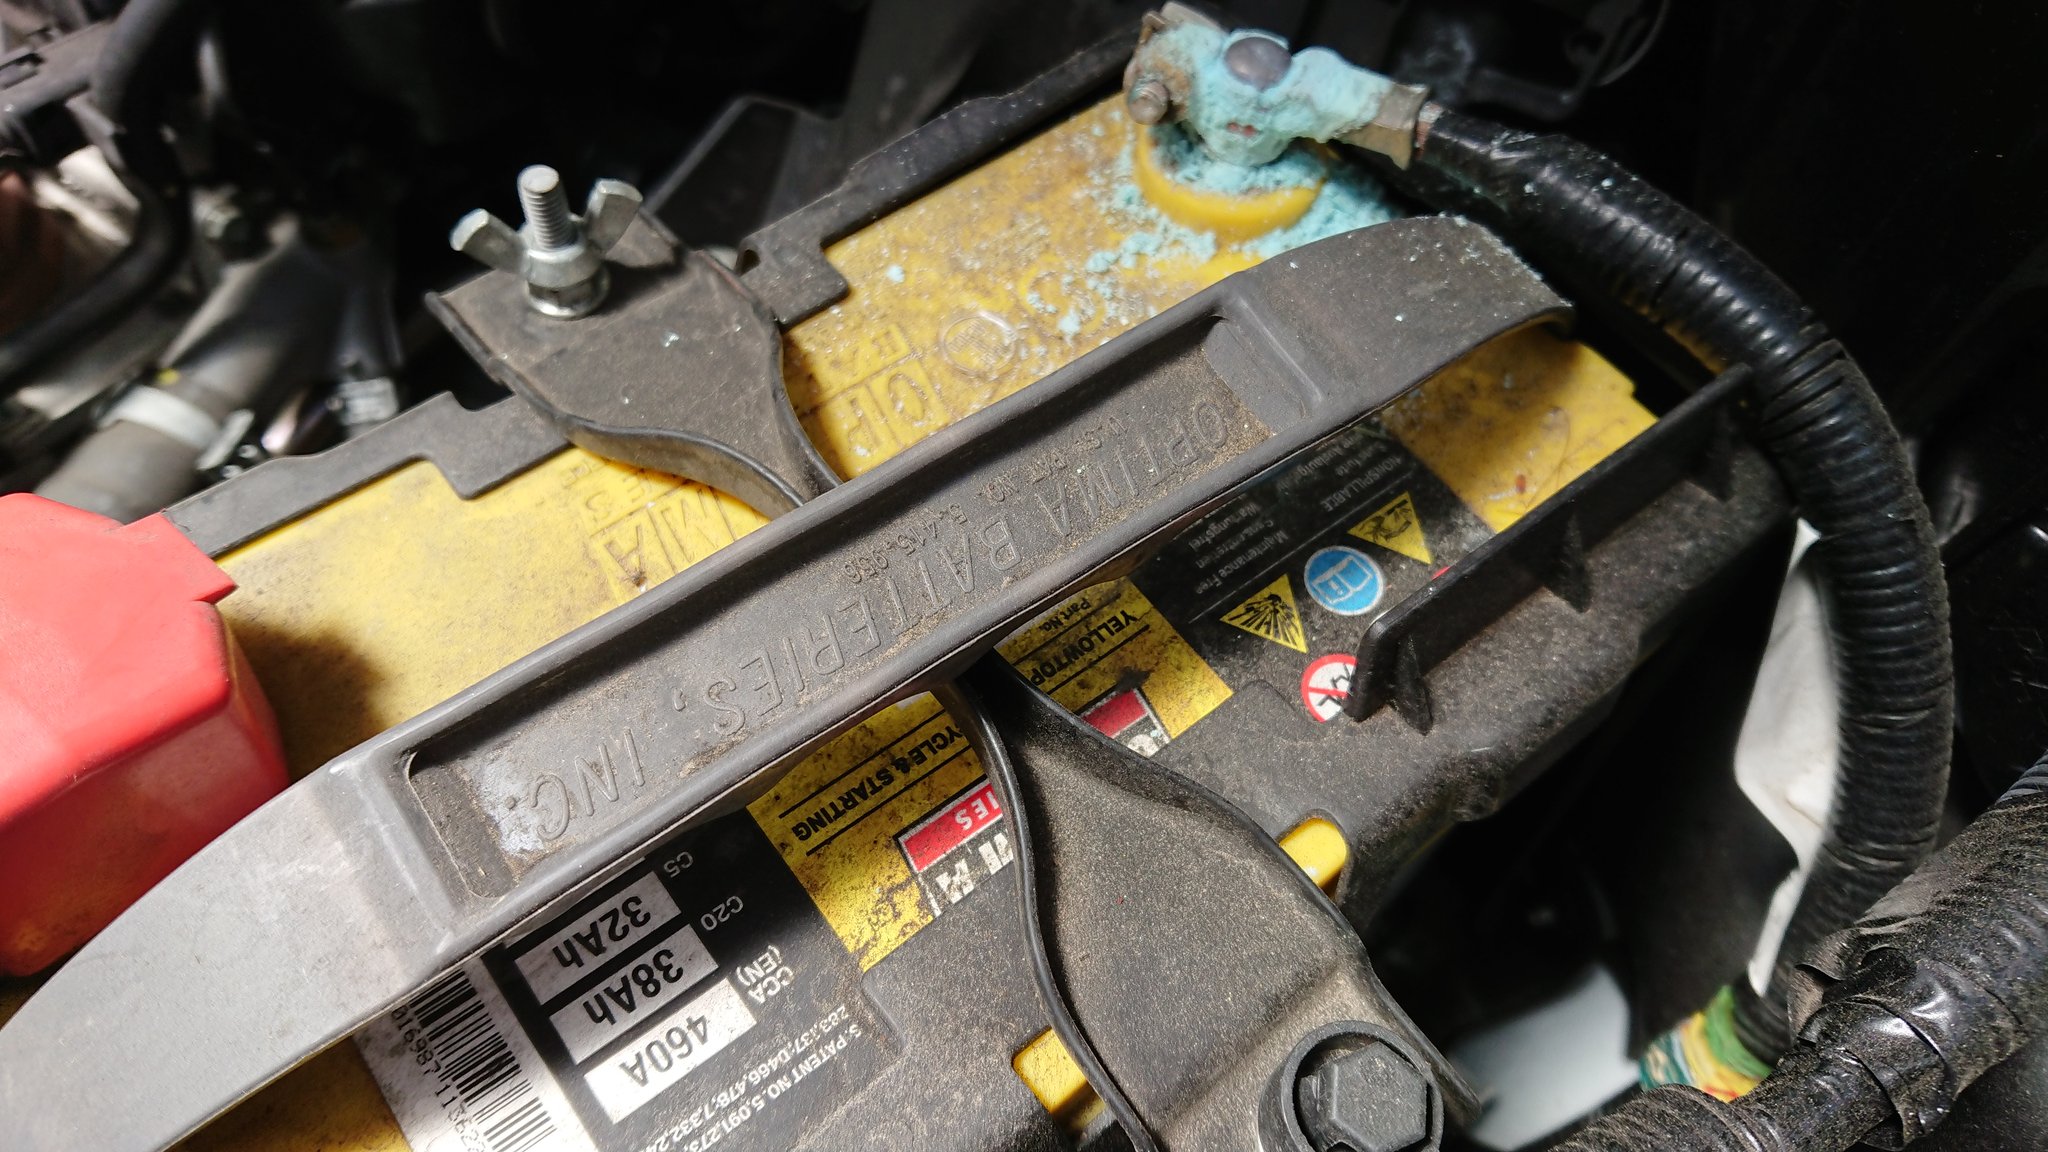 Rukie0 001 イエロートップのオプティマバッテリー 二年ちょいでマイナス端子側に青白いお粉がっ 想定より早いなあ まあいったん外してお掃除 まだ普通にエンジンかかるけどもう劣化 交換しなきゃならないのか 車 バッテリー 白い粉 オプティマ